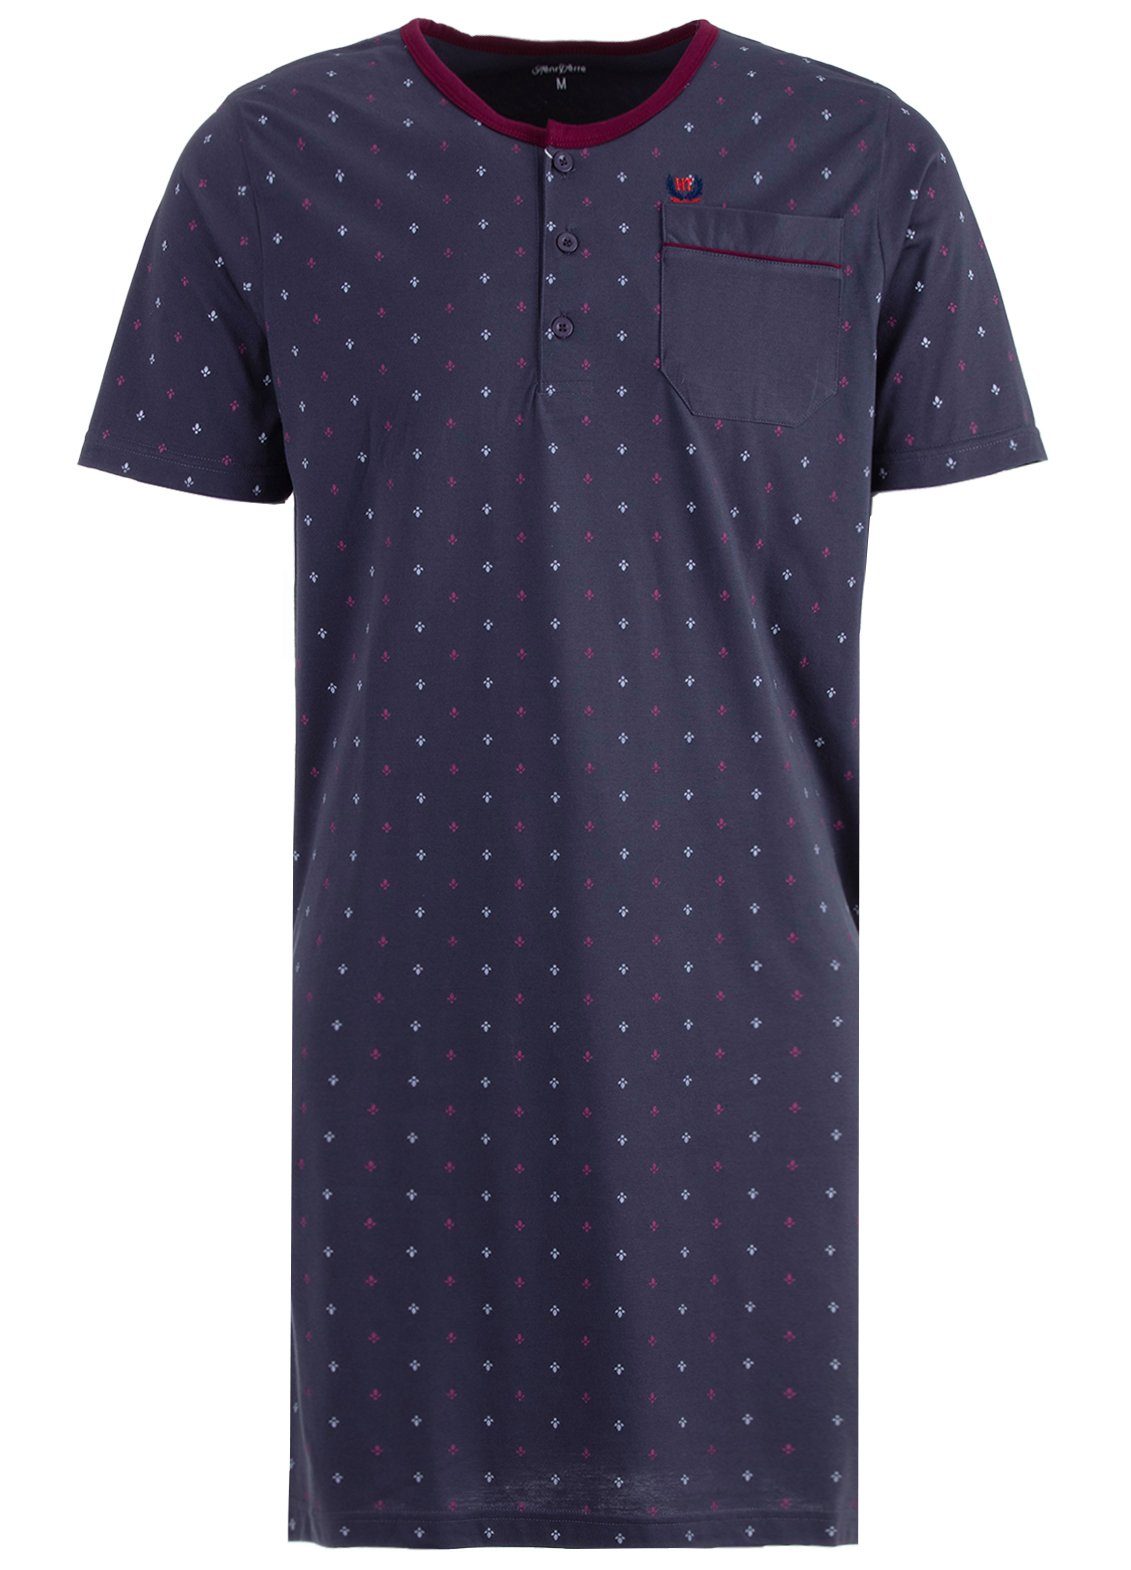 Henry Terre Nachthemd Nachthemd Kurzarm - anthrazit Blatt